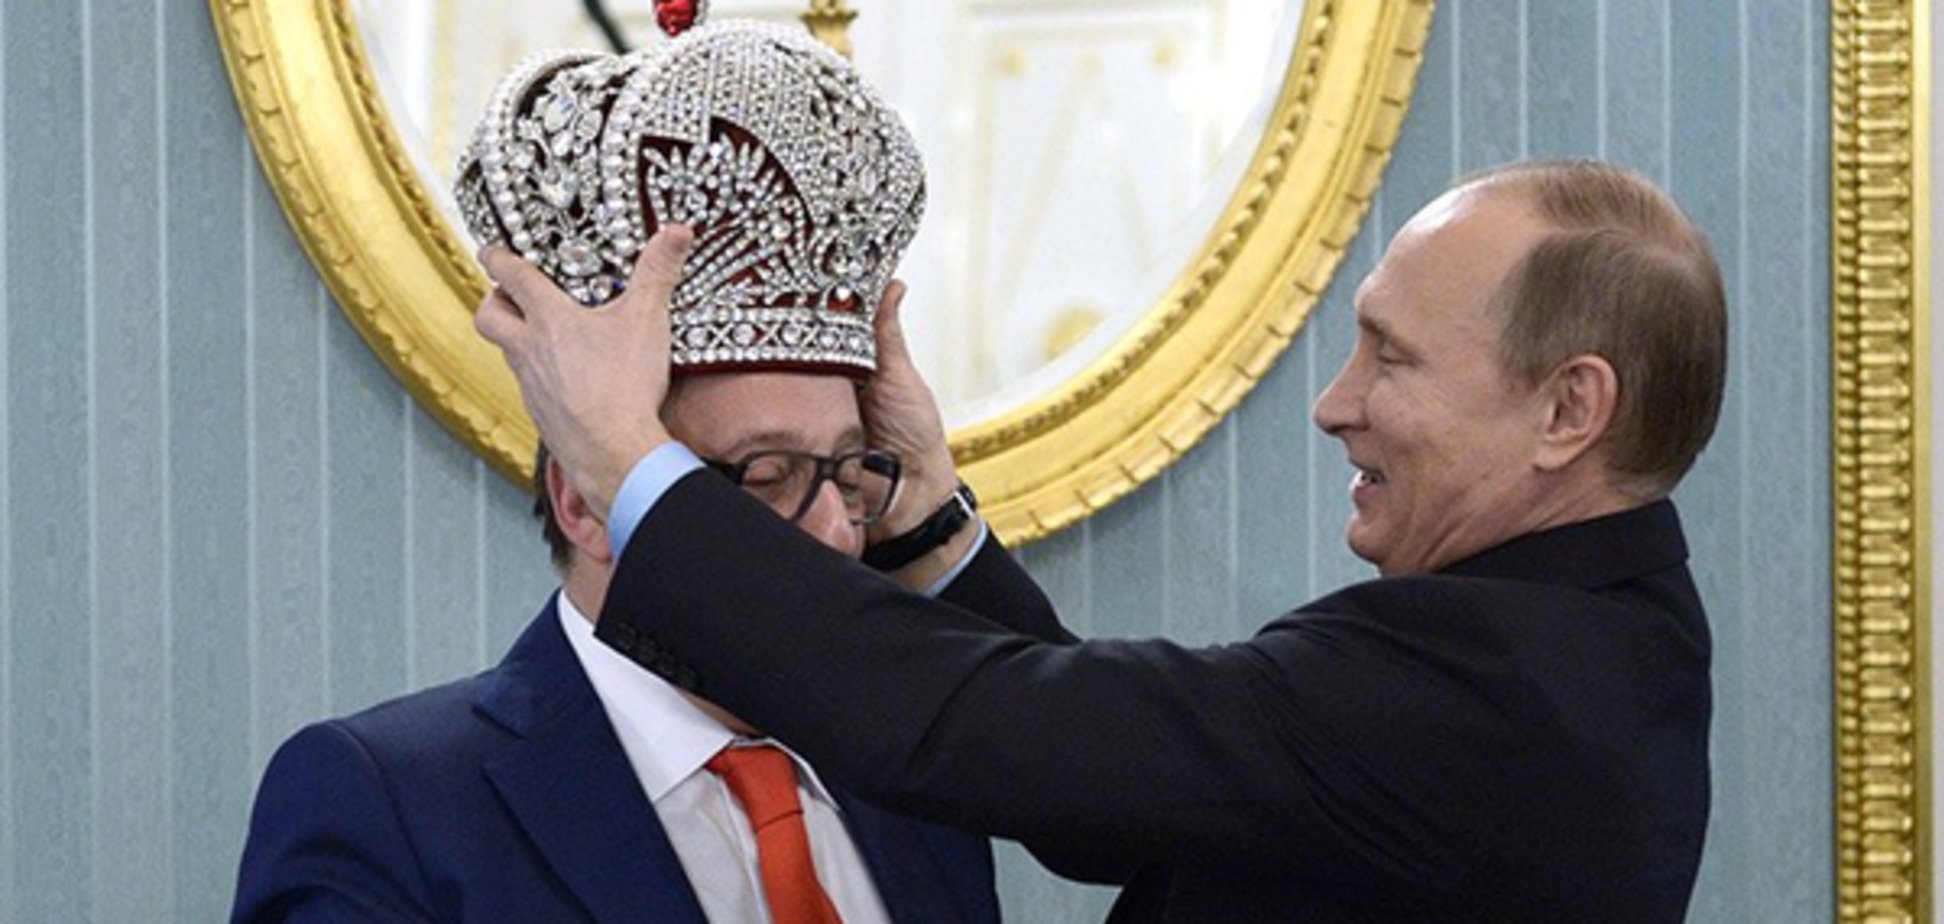 Застав дурня молитися: радник Порошенка прокоментував 'коронацію' Путіна